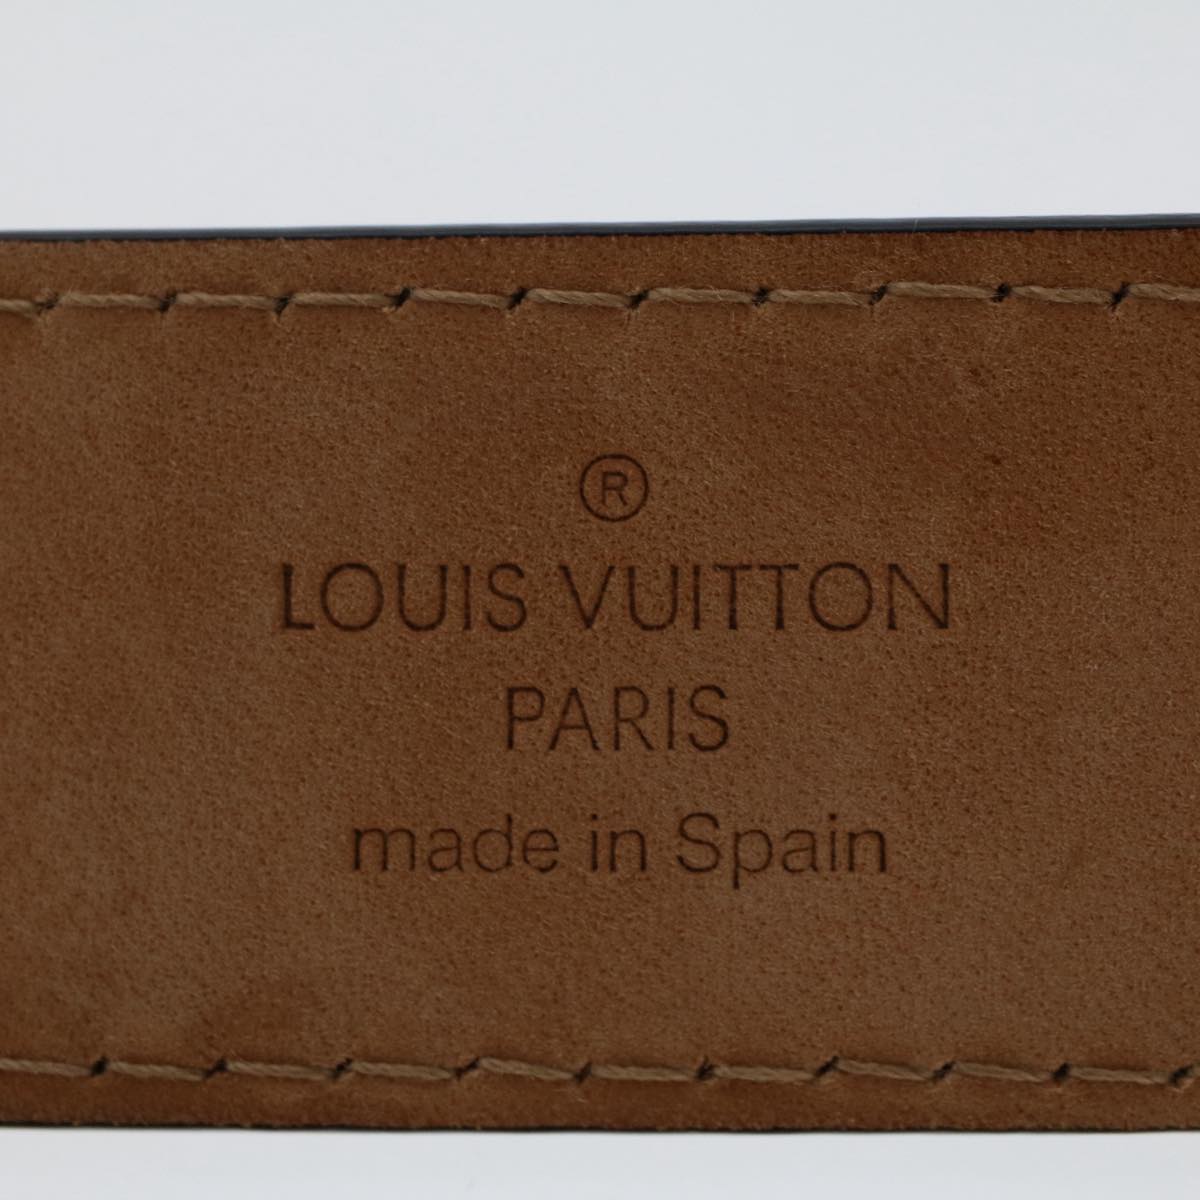 LOUIS VUITTON Ceinture jeans Belt Leather 29.5""-33.5"" Black M6812 Auth tb846